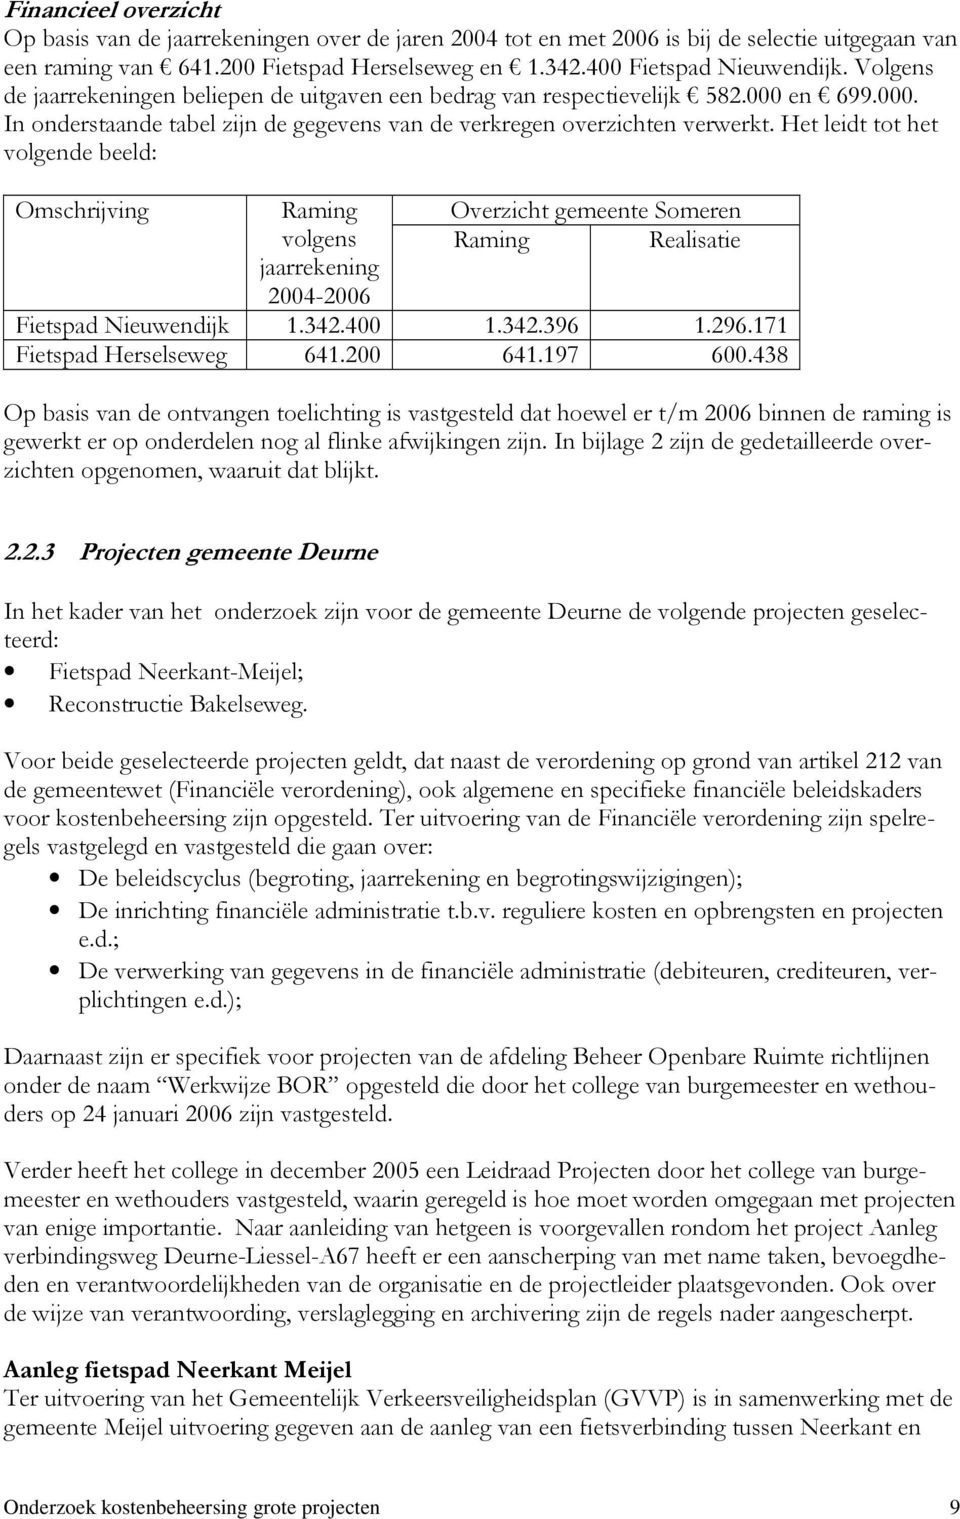 Het leidt tot het volgende beeld: Omschrijving Raming volgens jaarrekening 2004-2006 Overzicht gemeente Someren Raming Realisatie Fietspad Nieuwendijk 1.342.400 1.342.396 1.296.